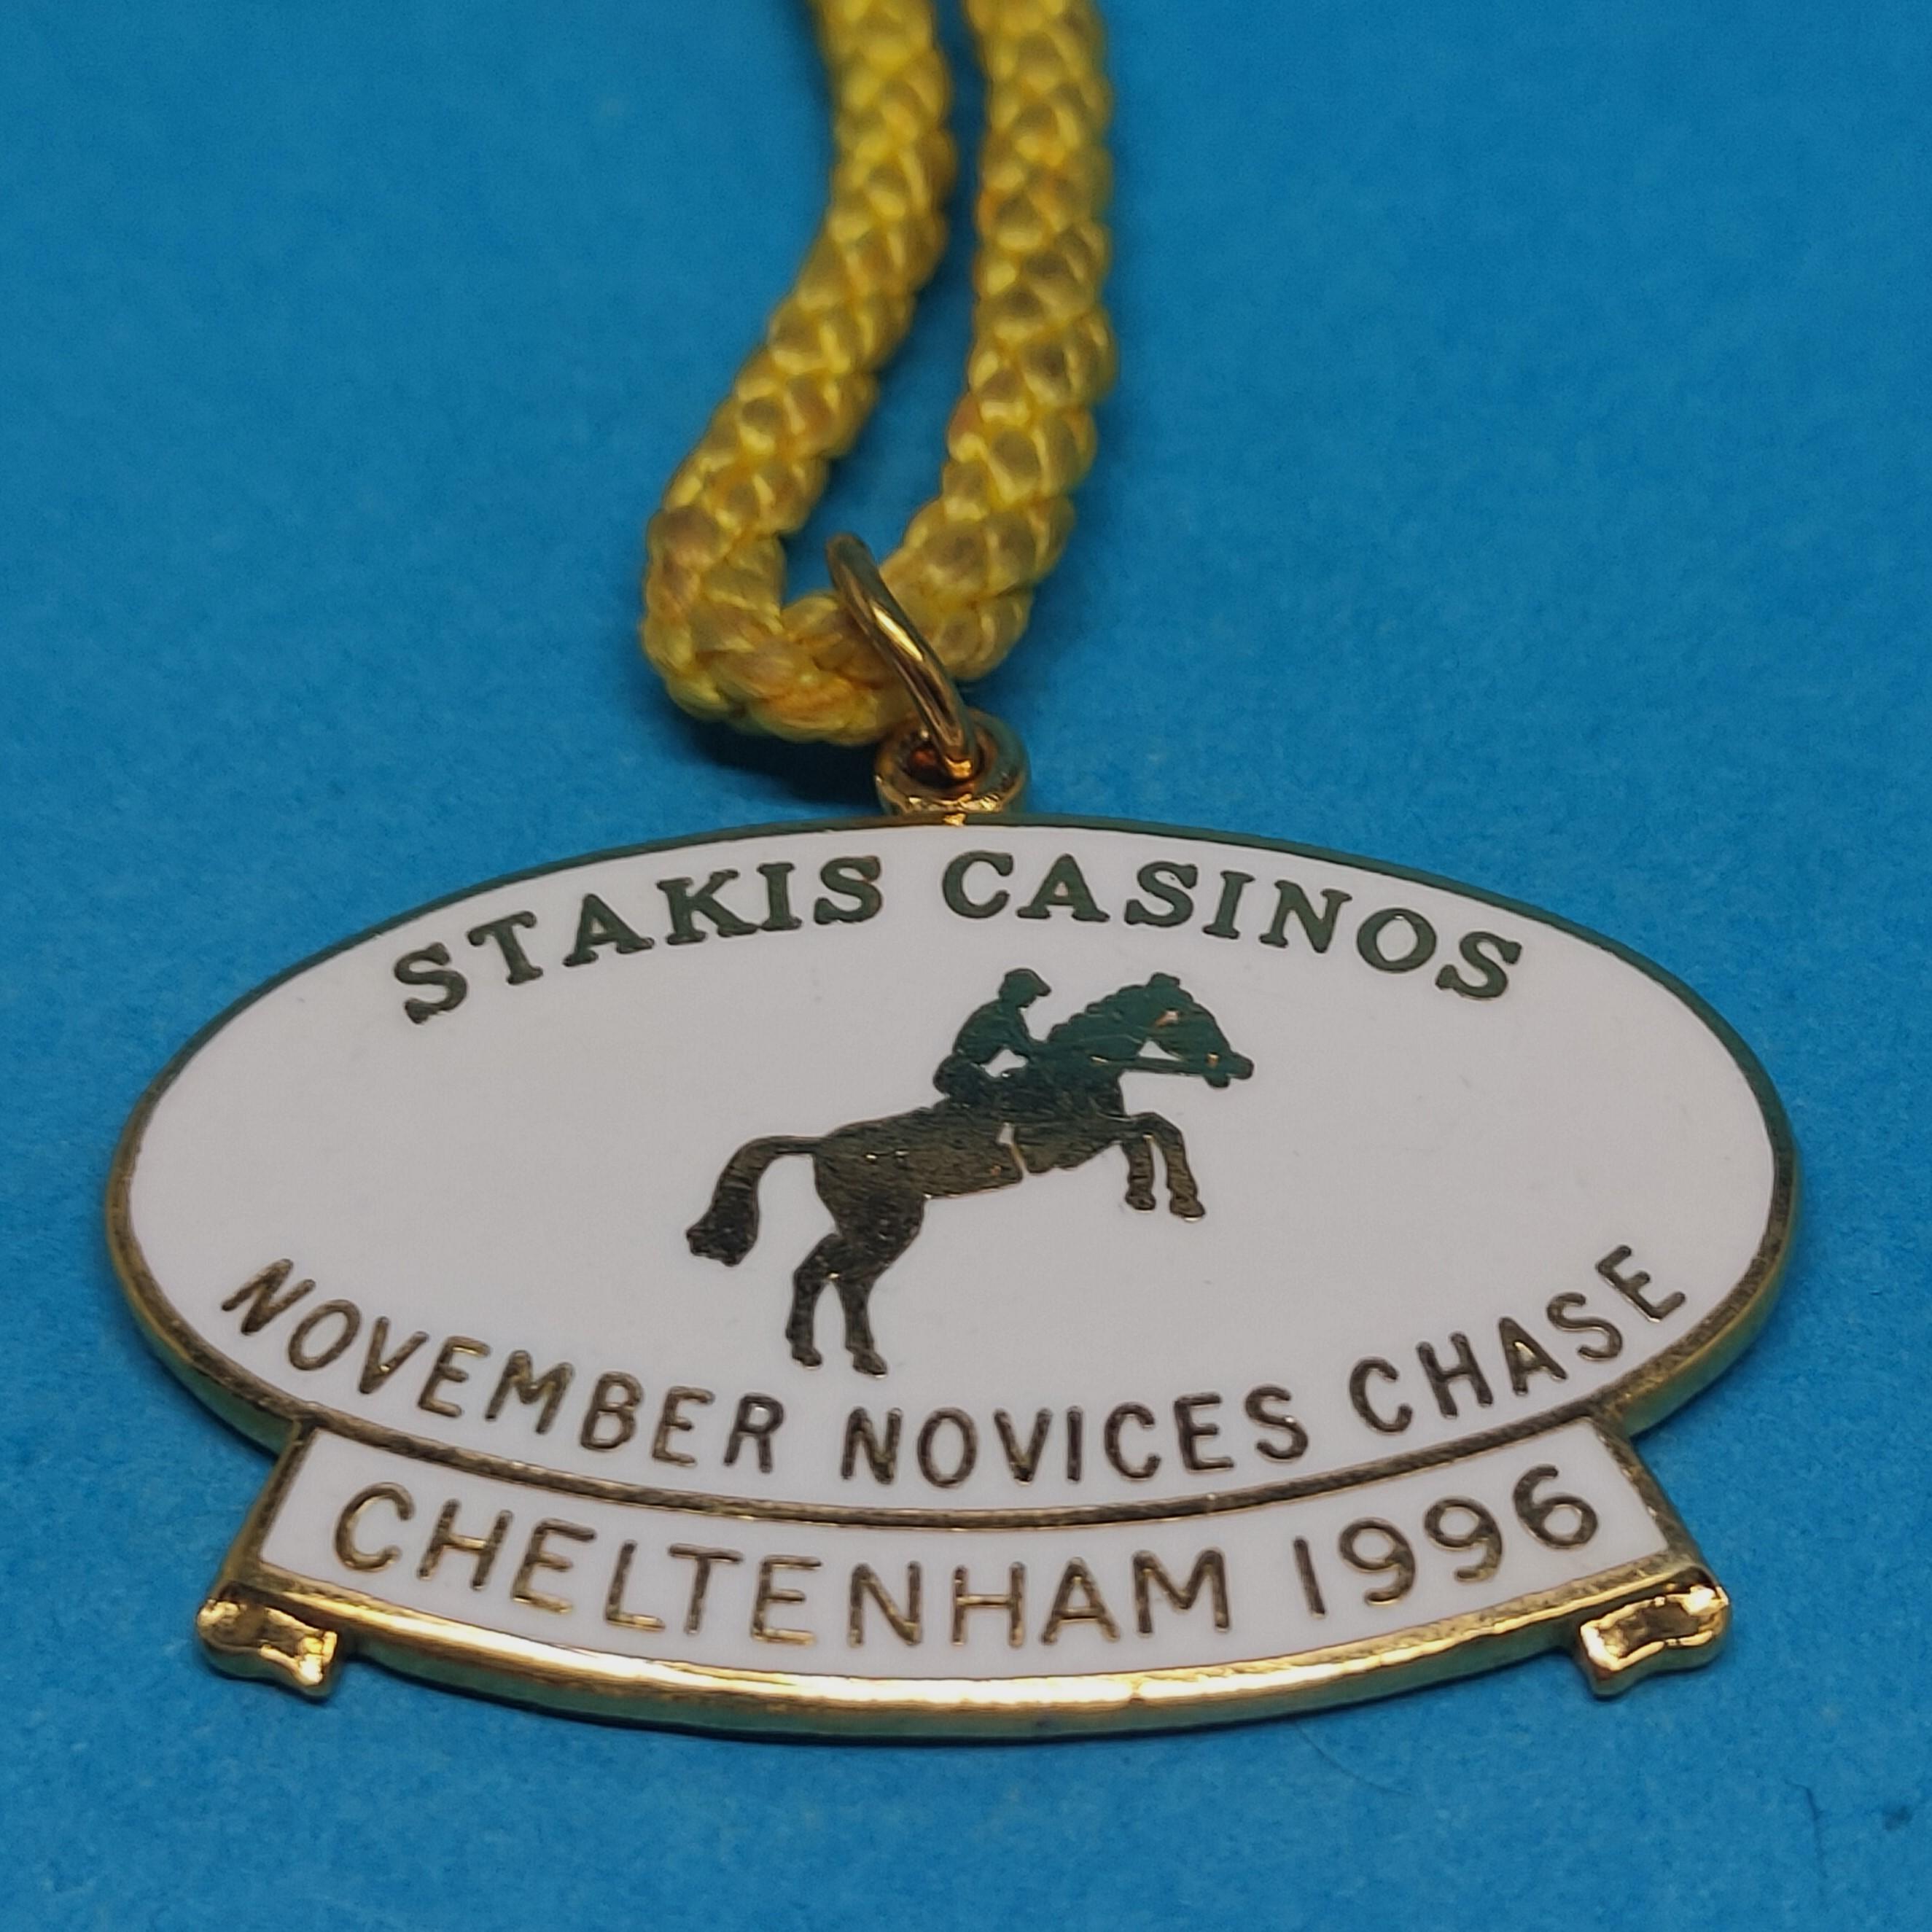 Cheltenham Stakis Casinos Novemner Novices Chase 1996